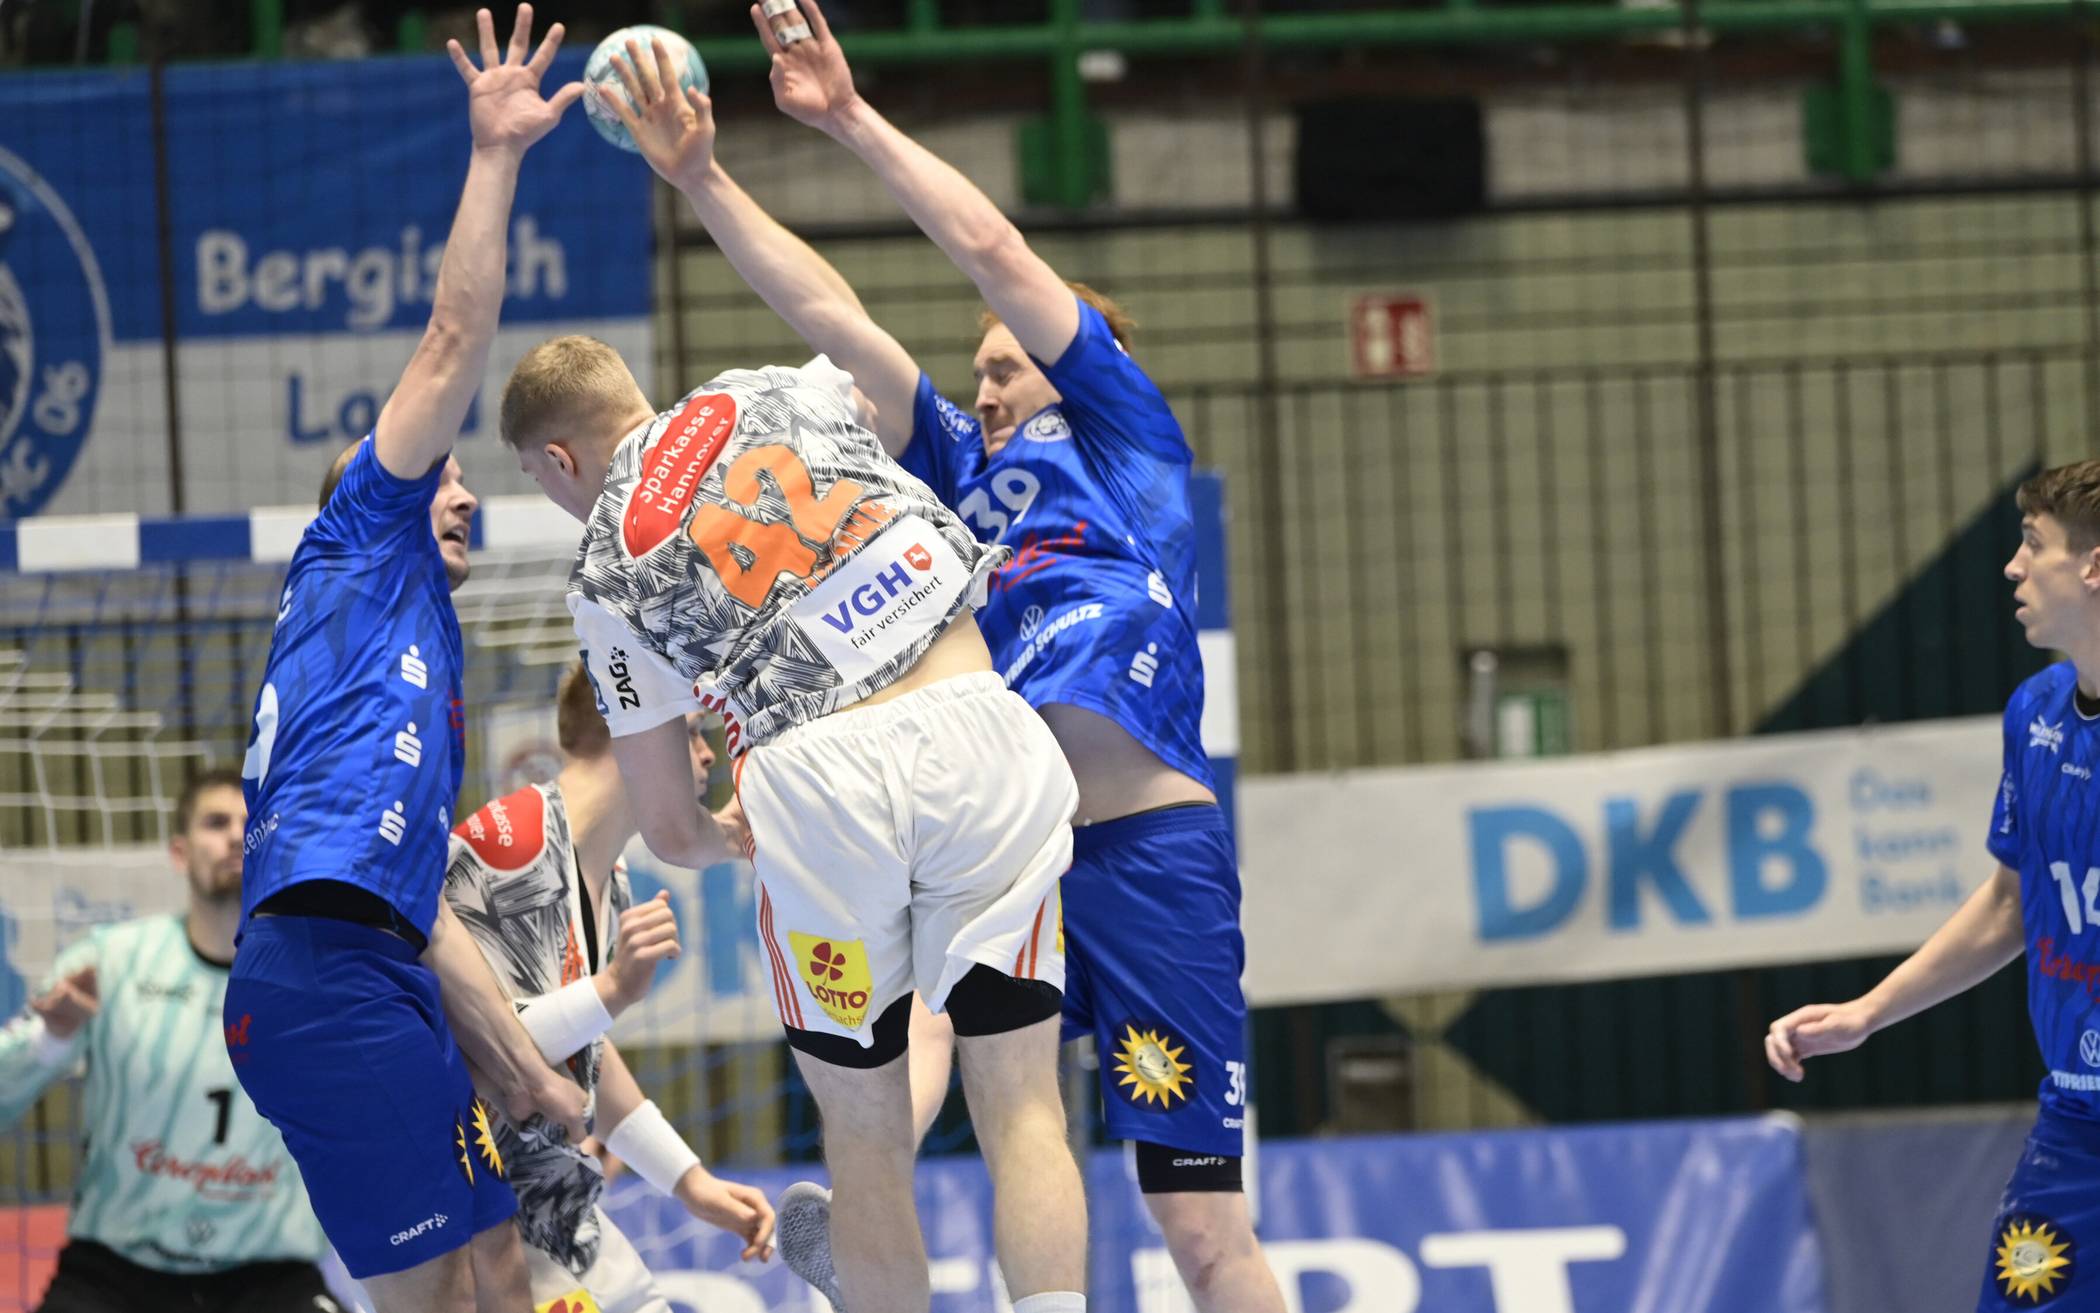 Bilder: Handball-Bundesligist BHC unterliegt auch Hannover​